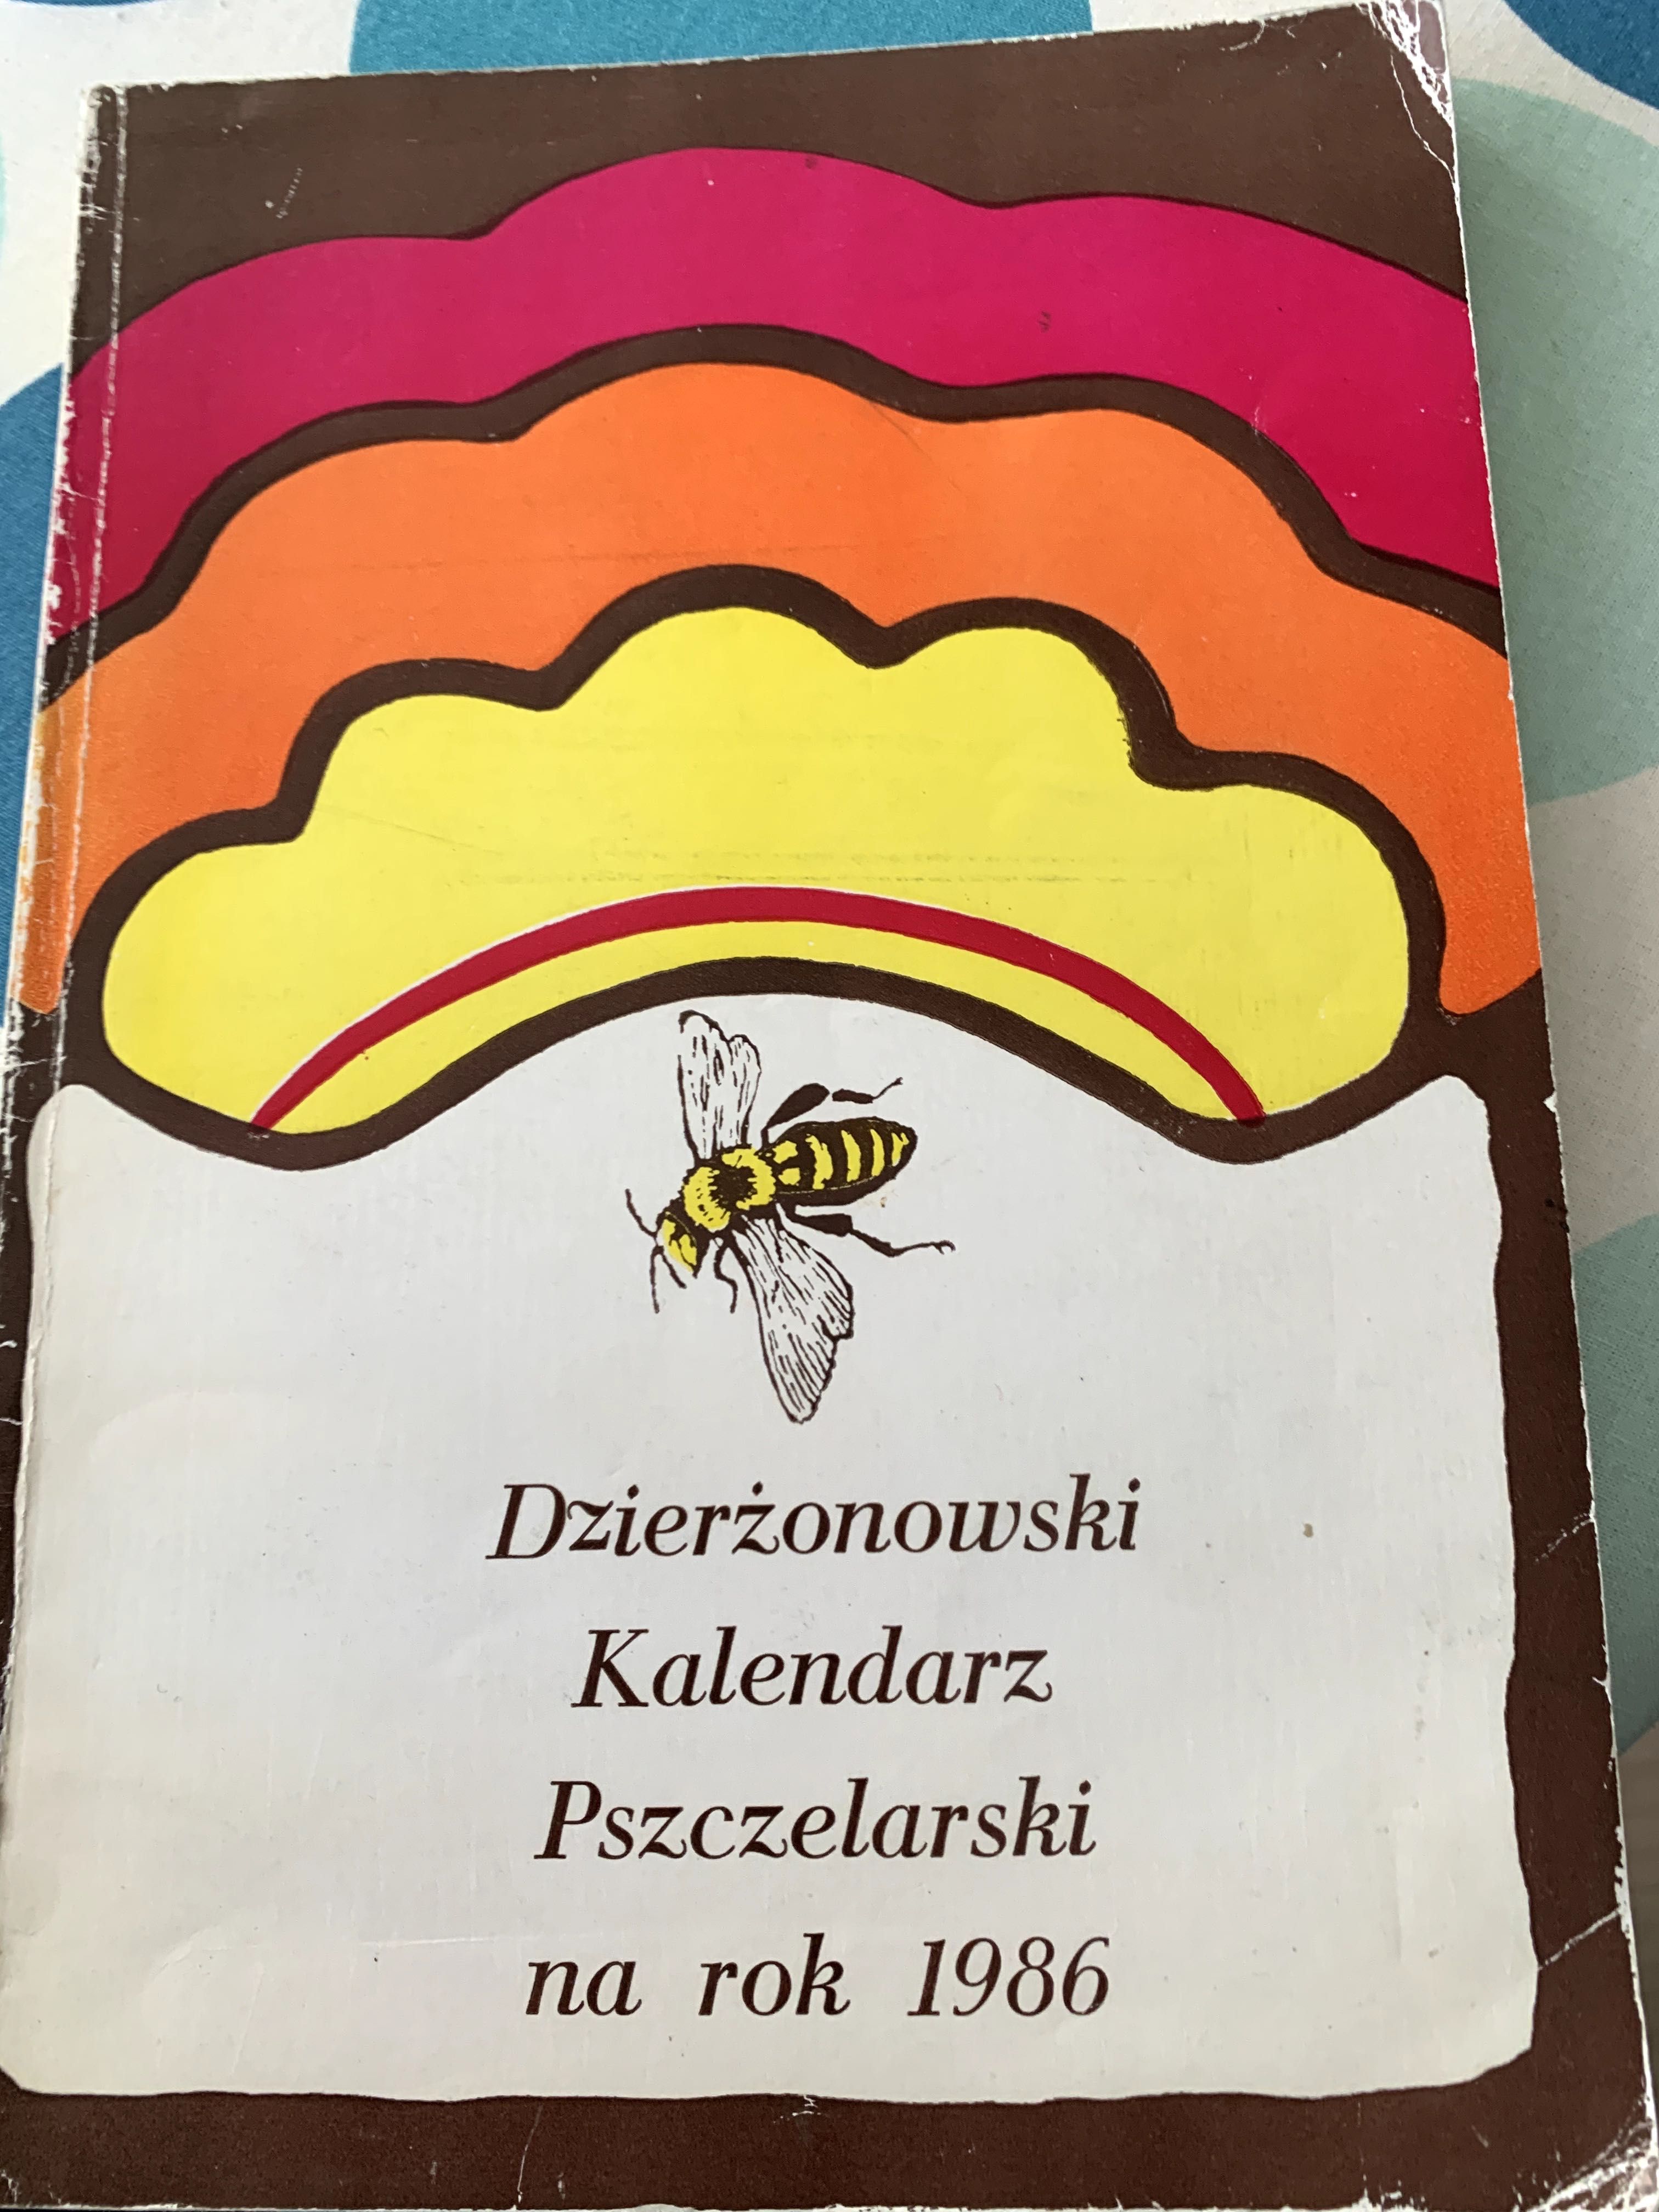 Dzierżonowski Kalendarz pszczelarski na rok 1986